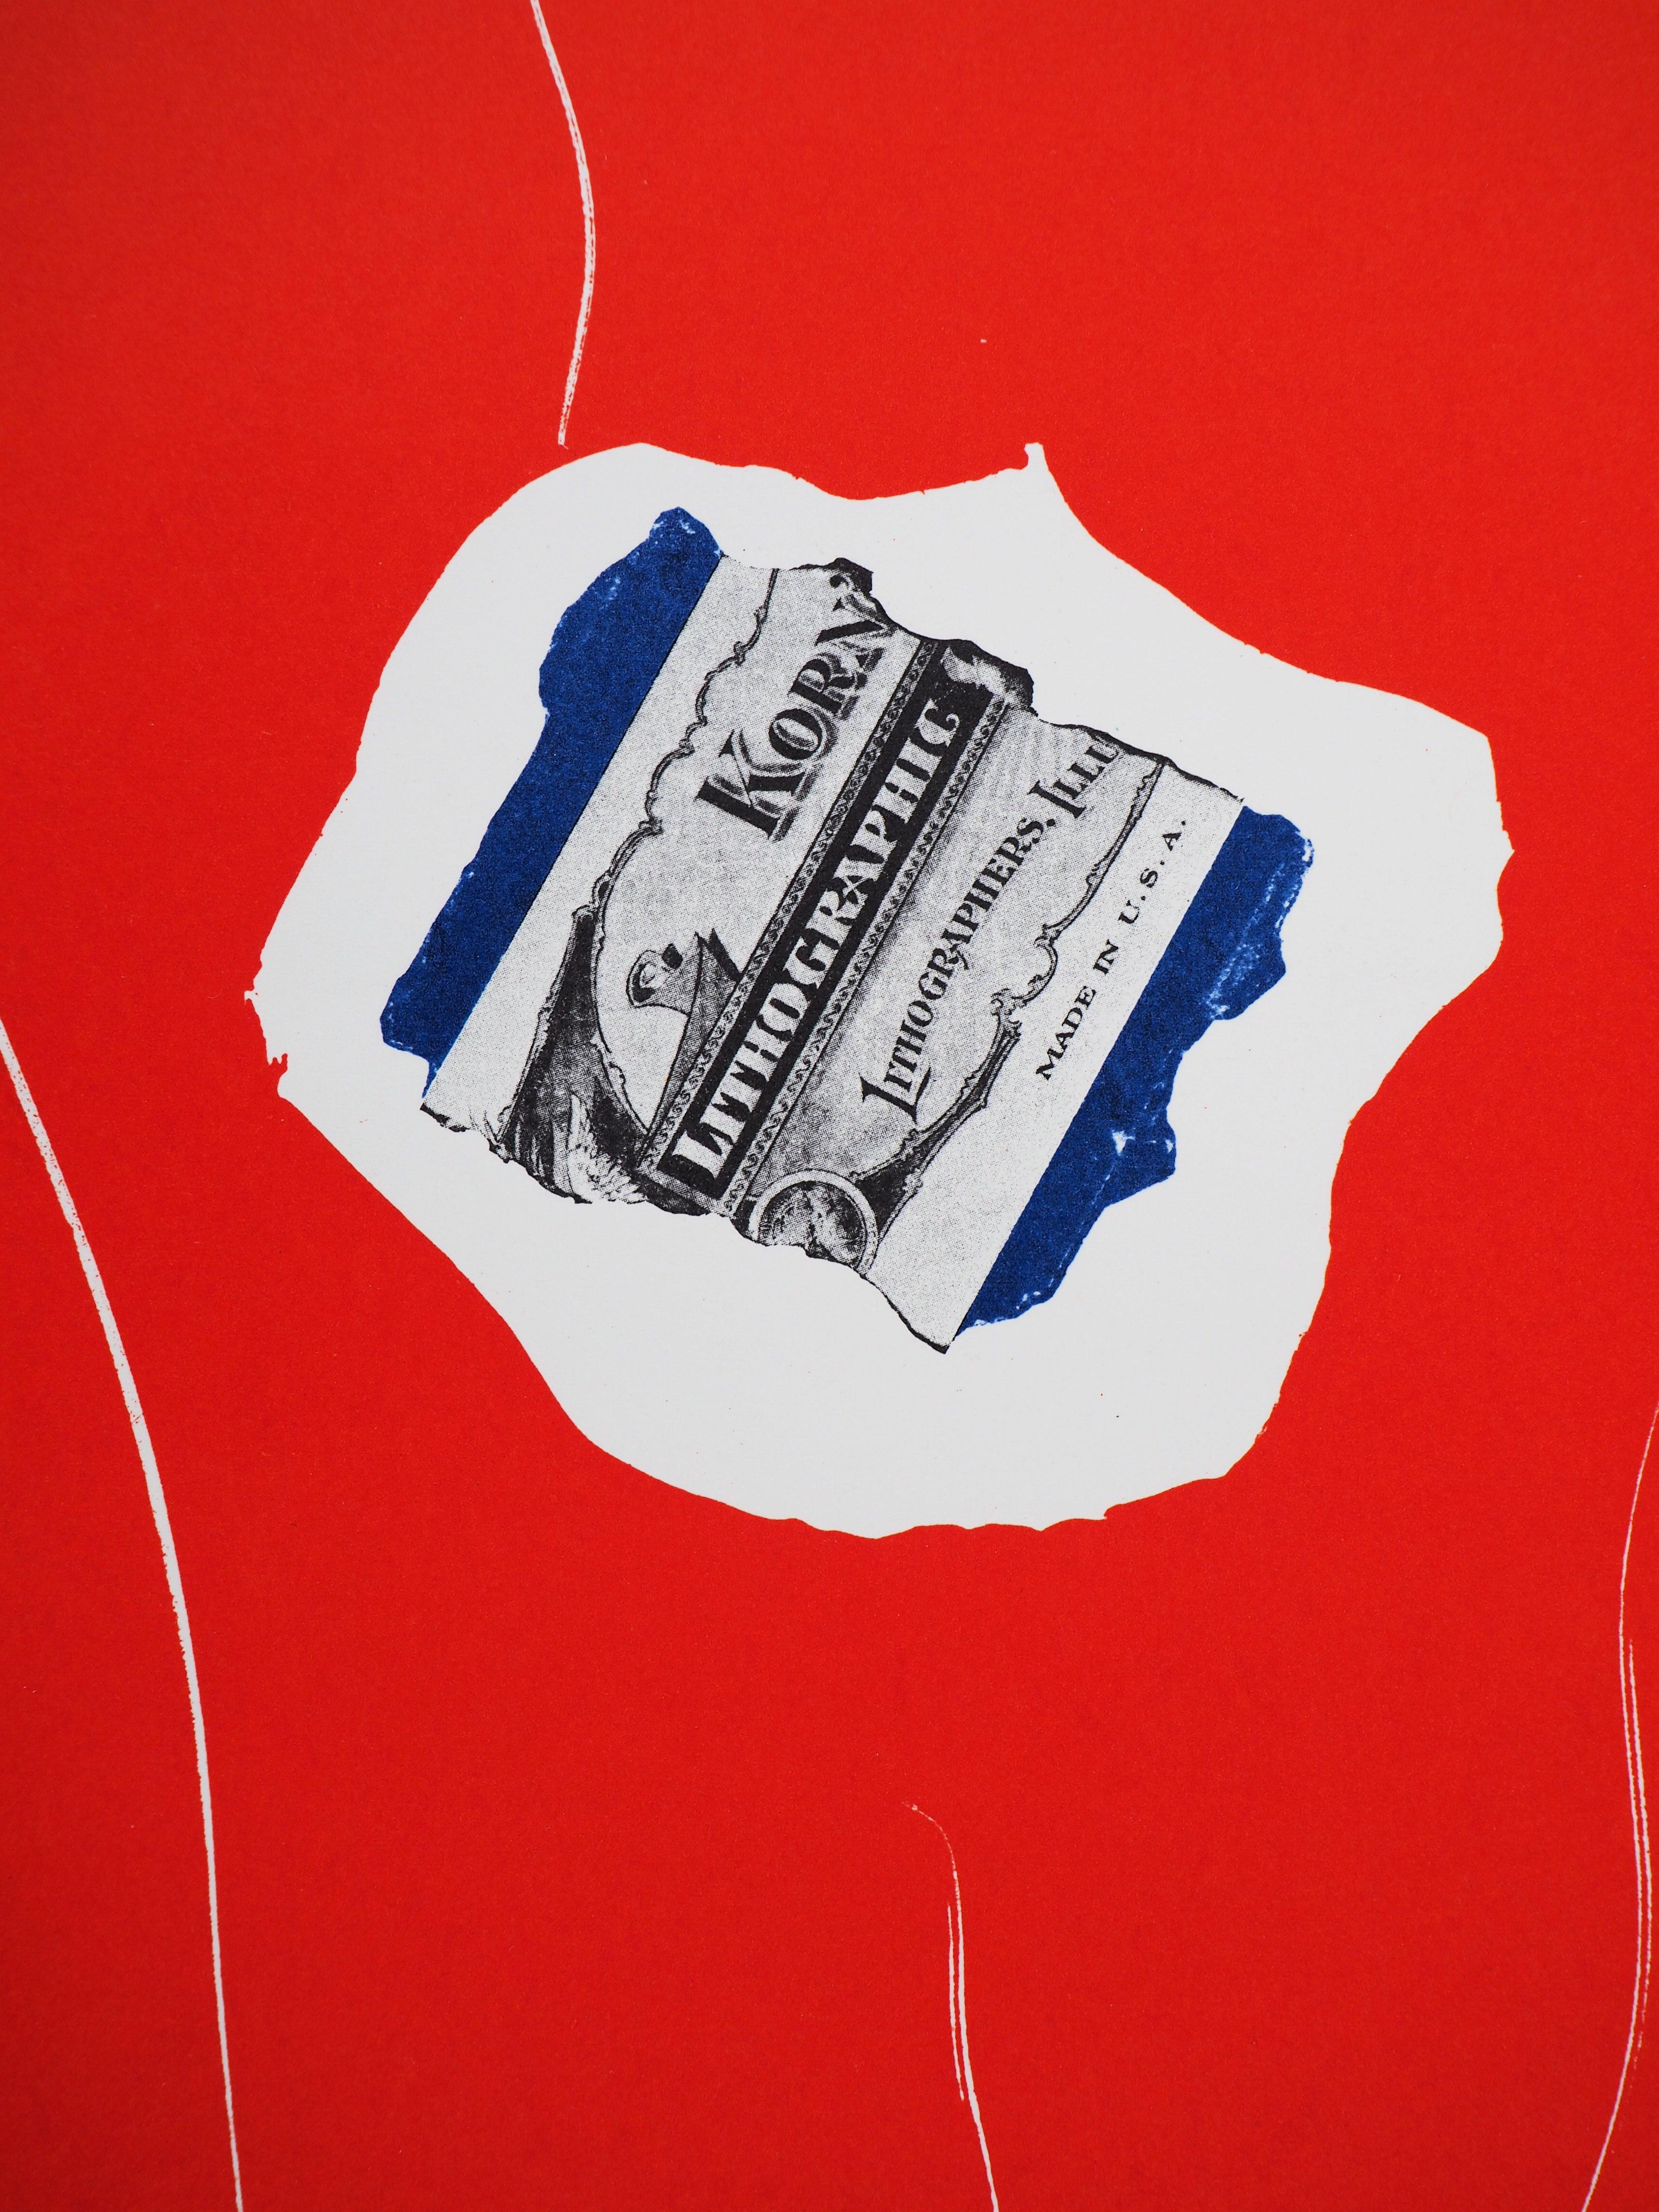 Robert MOTHERWELL
Trikolore mit Dollar, 1973

Original-Lithographie 
(Gedruckt in der Werkstatt Mourlot)
Gedruckte Unterschrift auf der Platte
Auf schwerem Papier 31 x 24 cm (ca. 12 x 10 inch)
Herausgegeben von San Lazzaro im Jahr